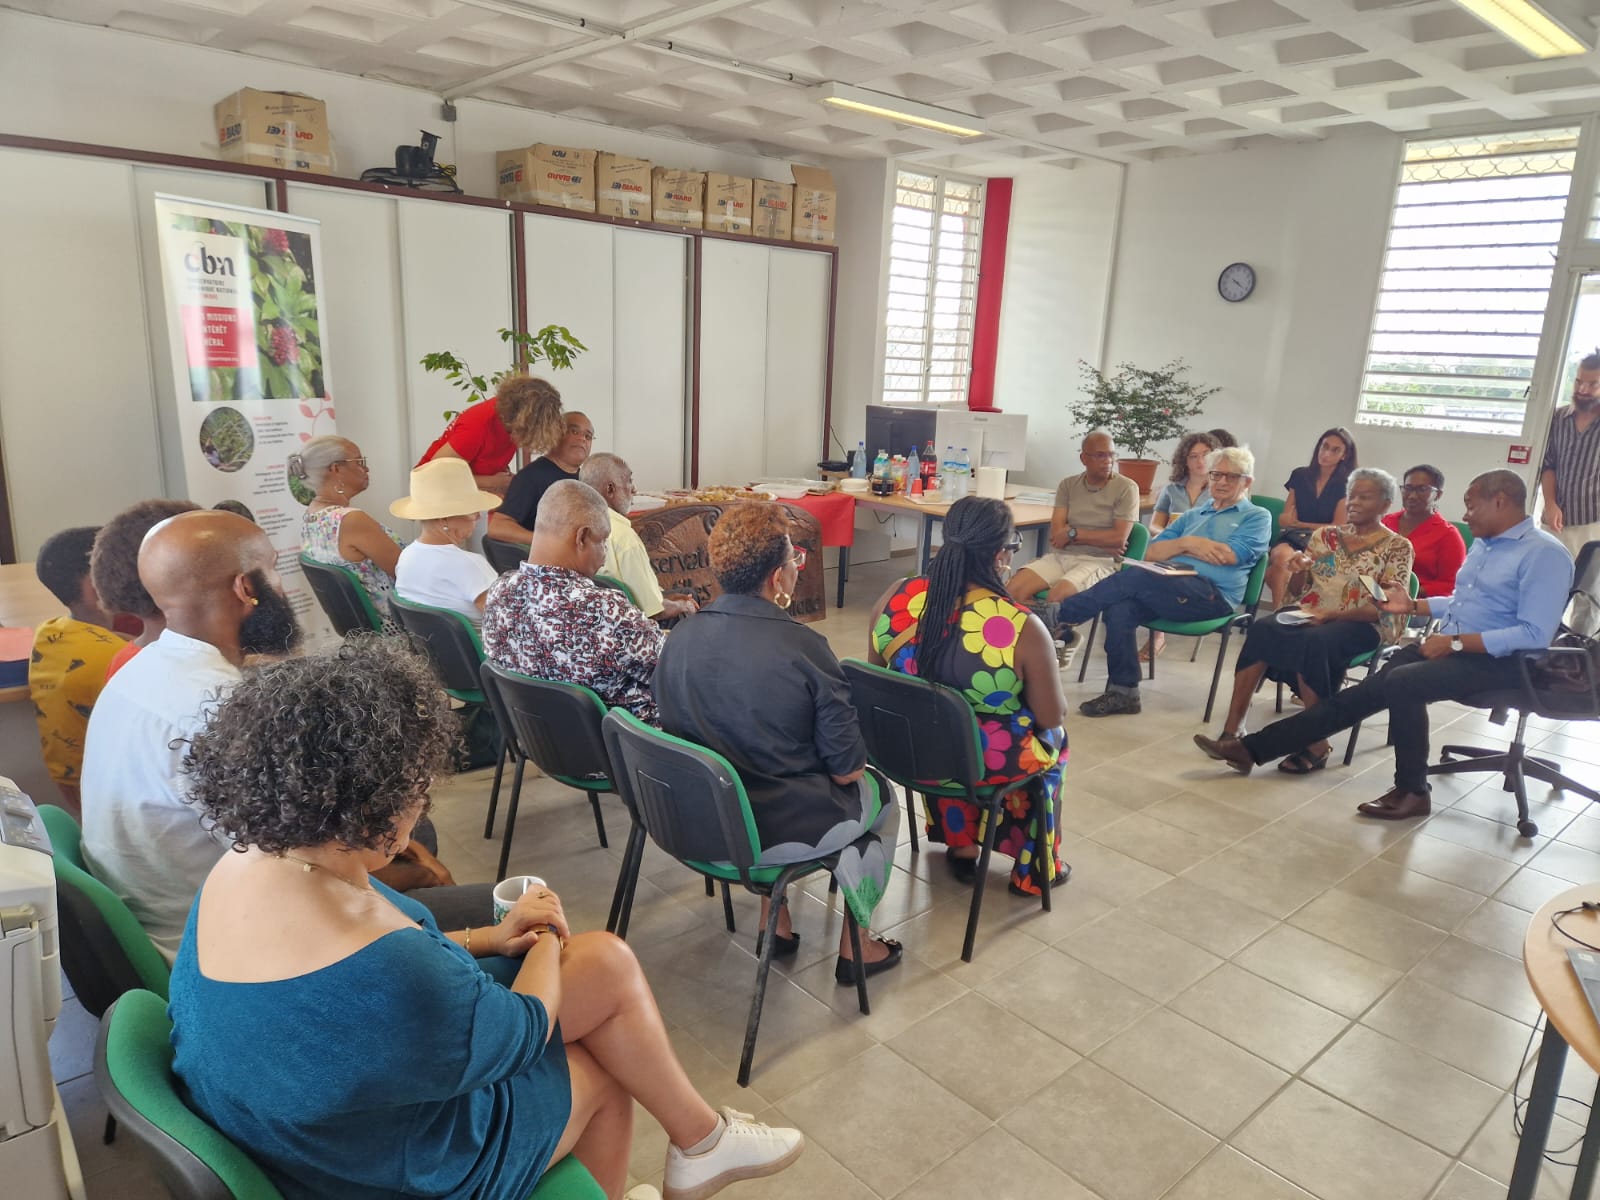     Le Conservatoire botanique de Martinique rend hommage à des figures emblématiques

